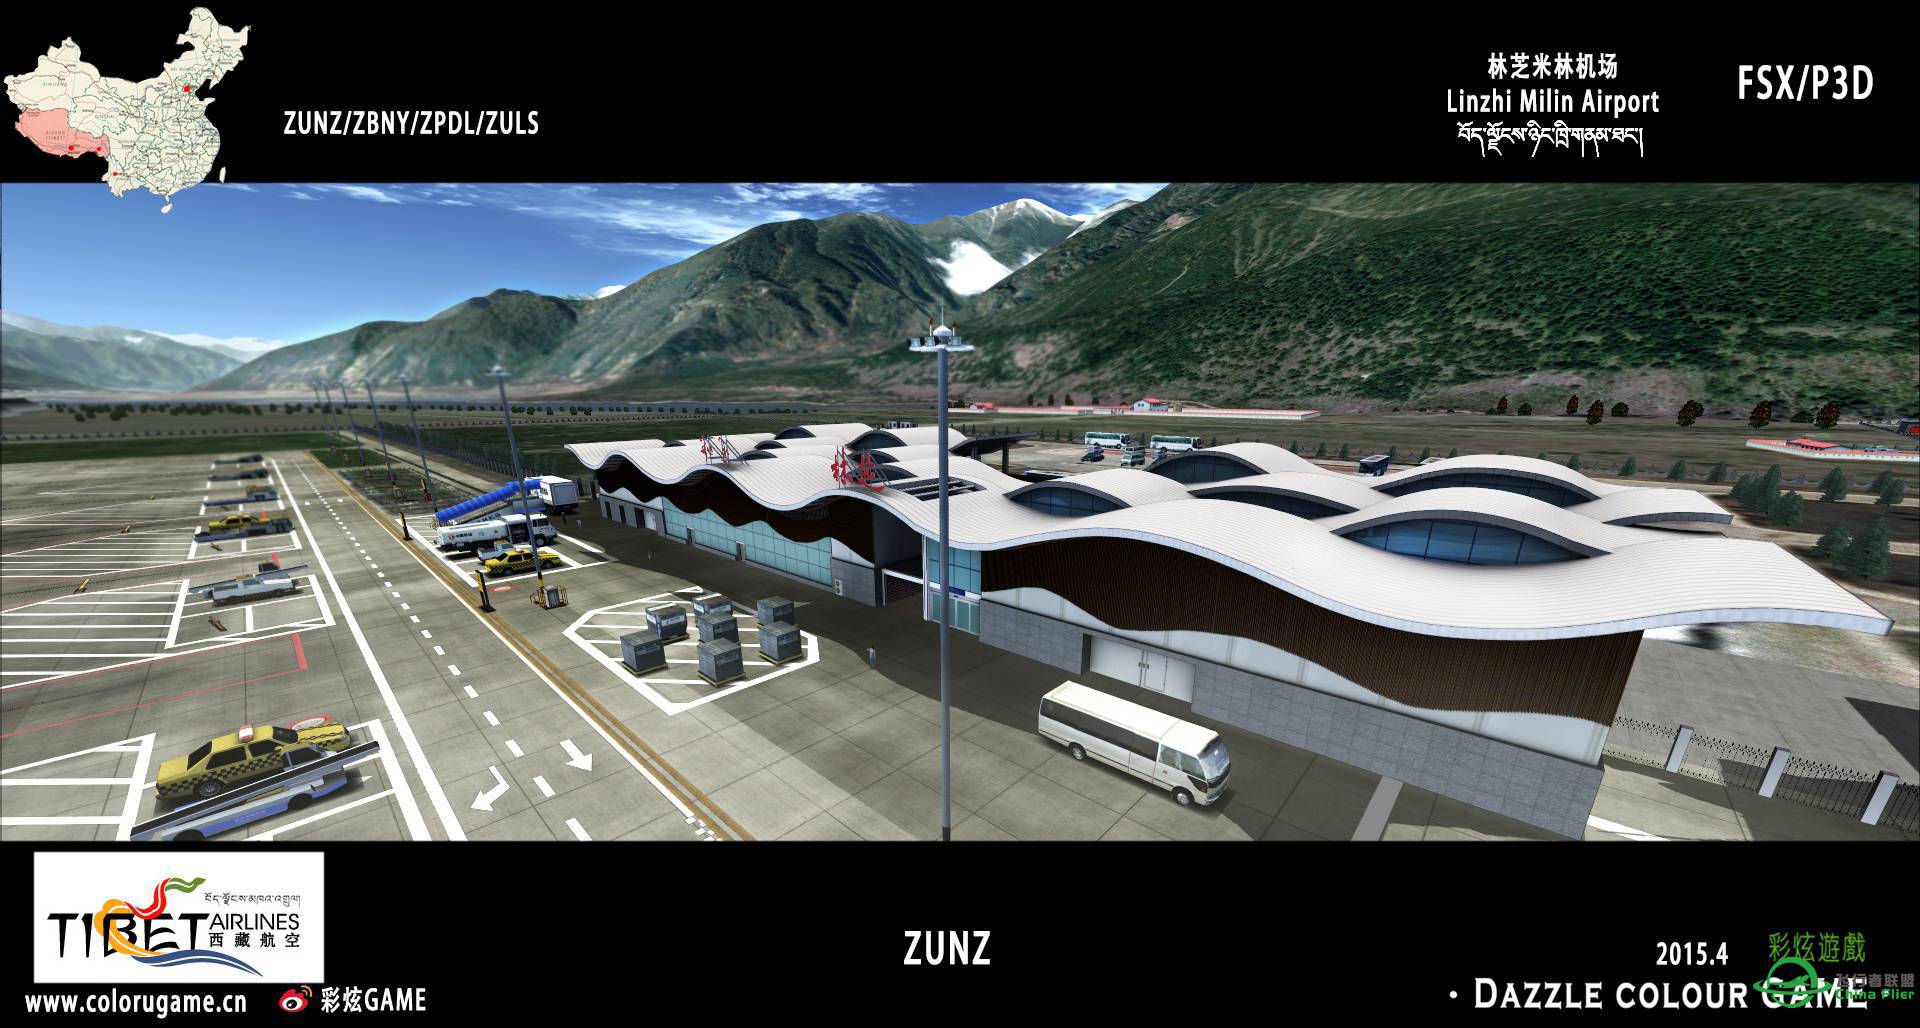 彩炫地景：林芝米林机场（ZUNZ）正式发布！-979 